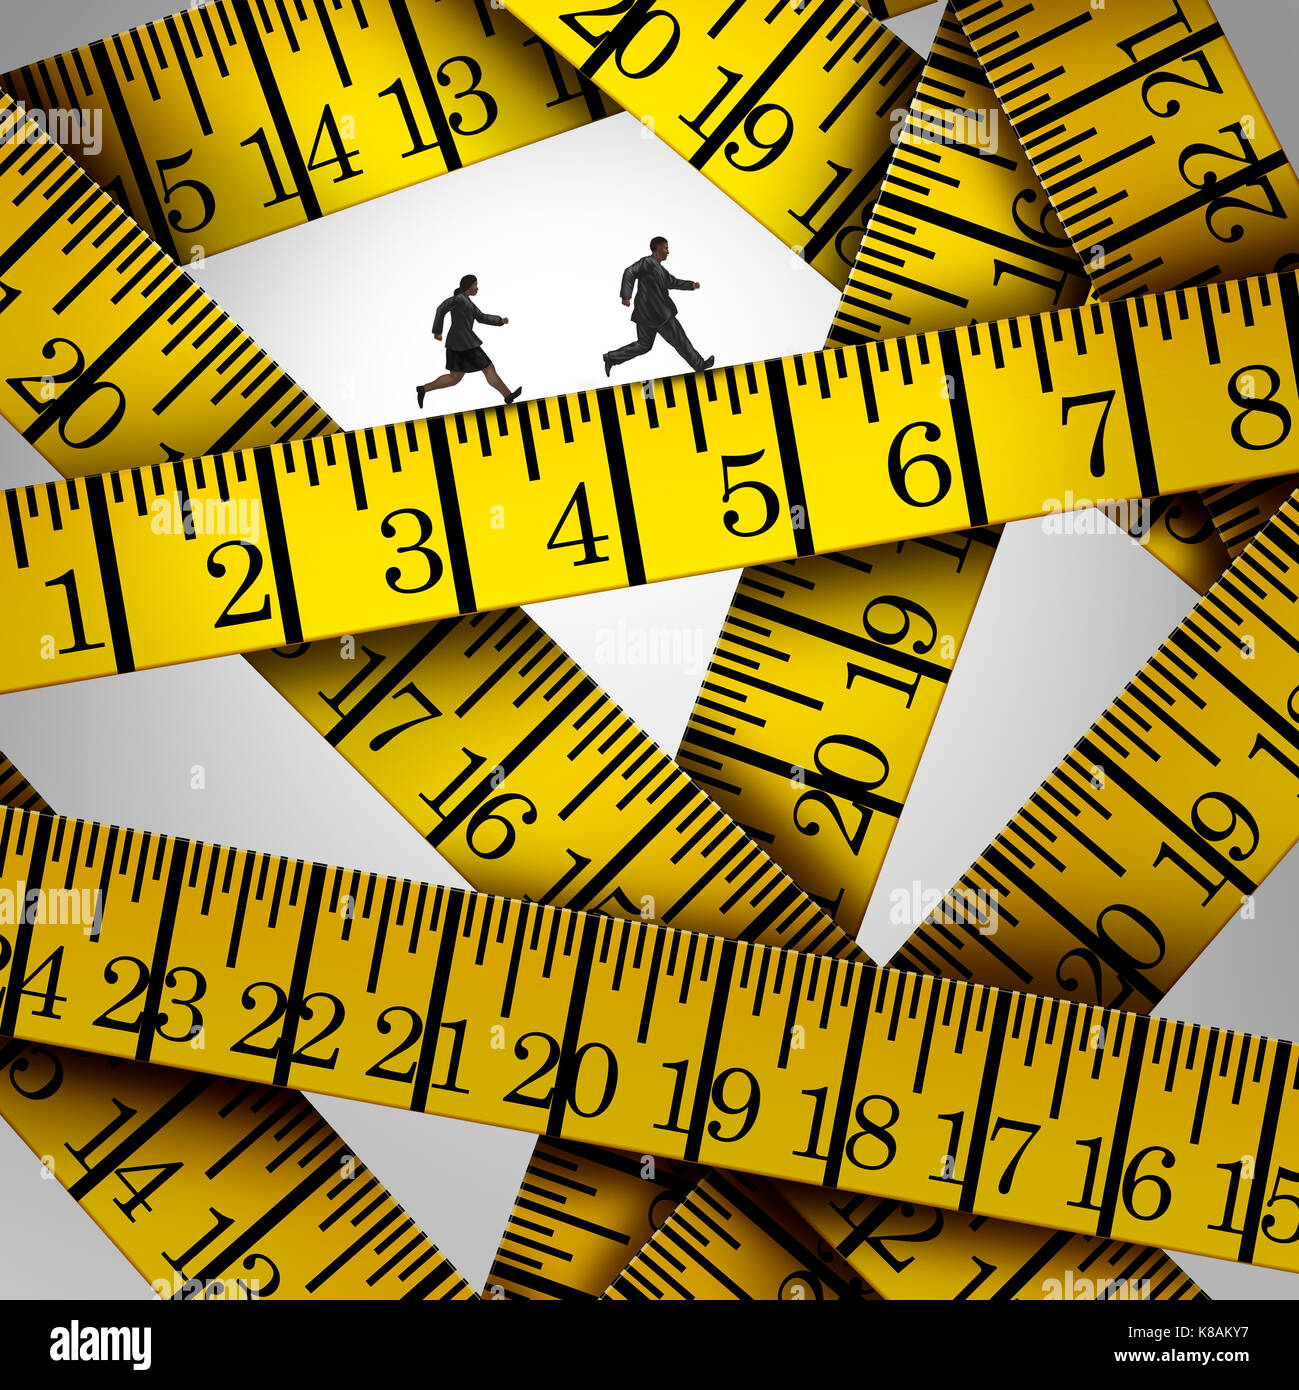 Messen Sie Krise und Gewichtskontrolle Konzept als zwei übergewichtige Menschen auf eine Diät, die auf einem Messgerät in einem 3D-Illustration style Band. Stockfoto